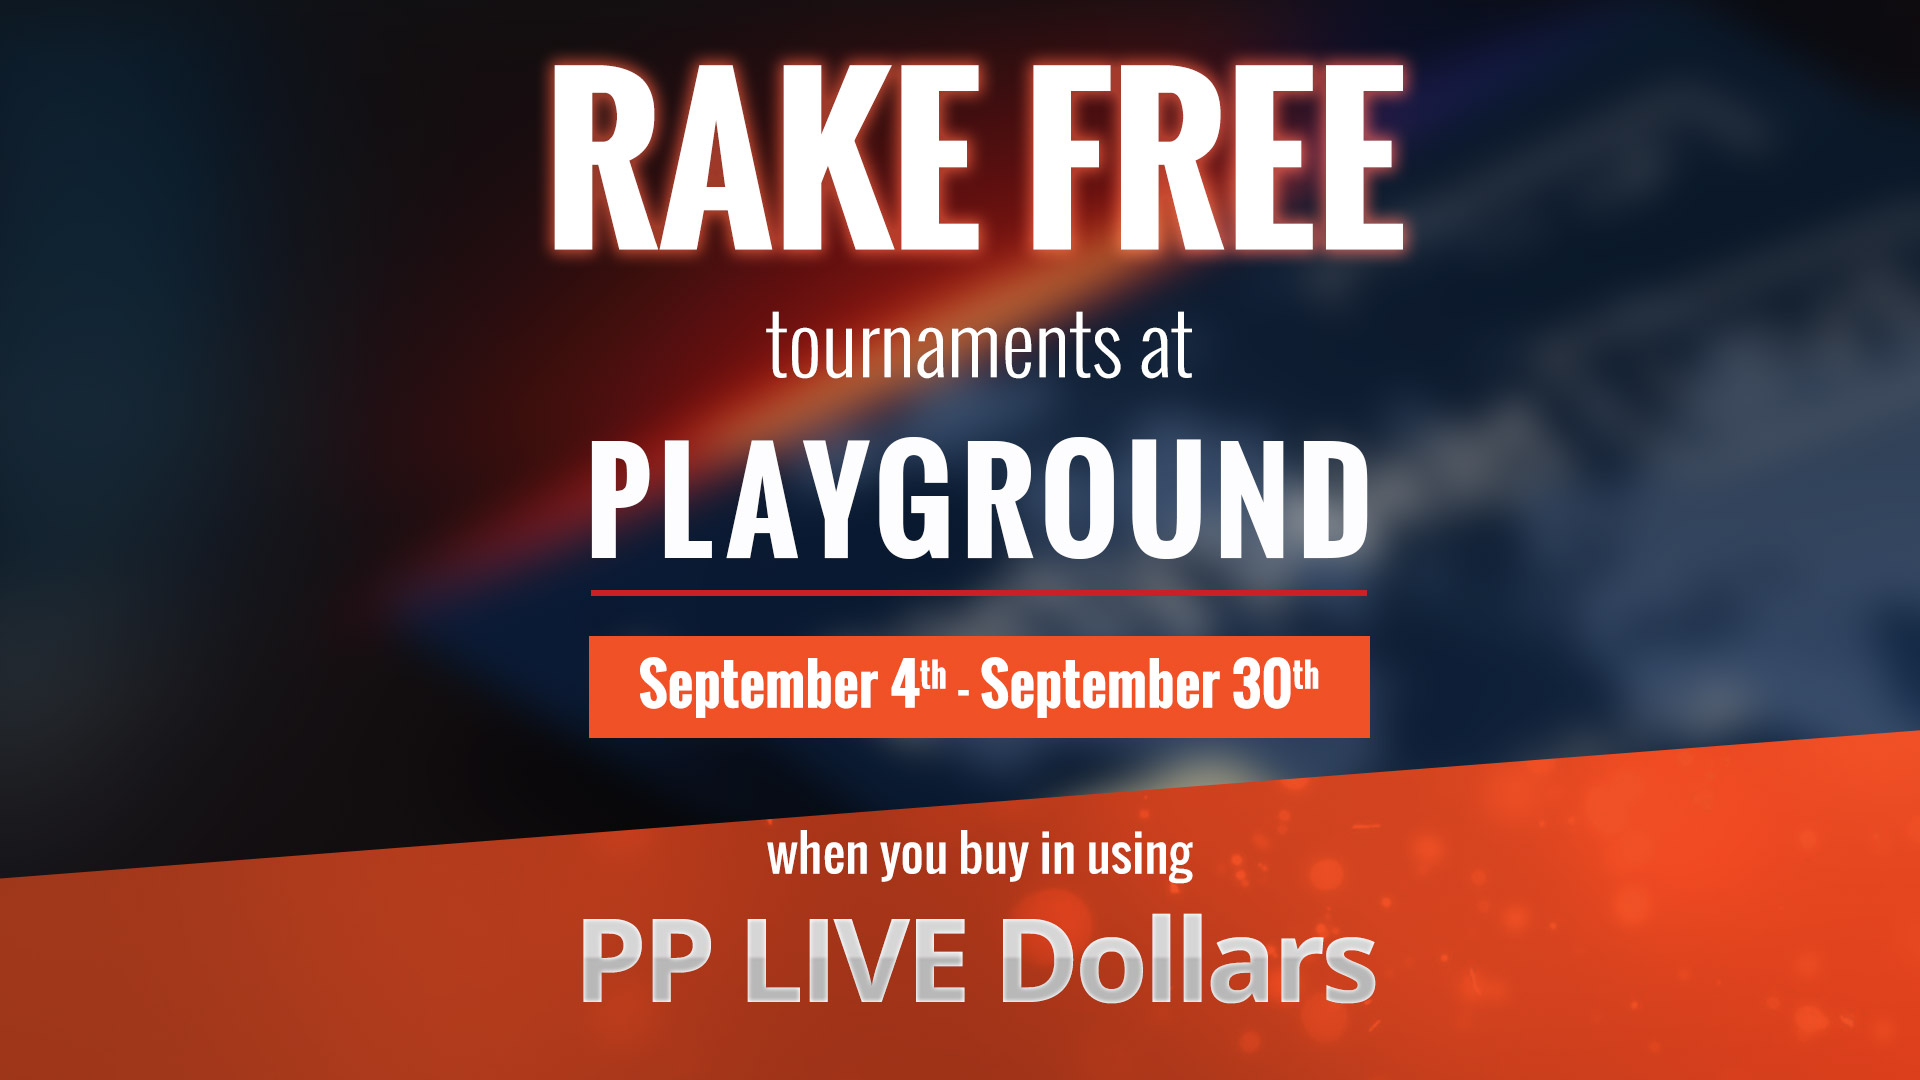 Rake-free tournaments!